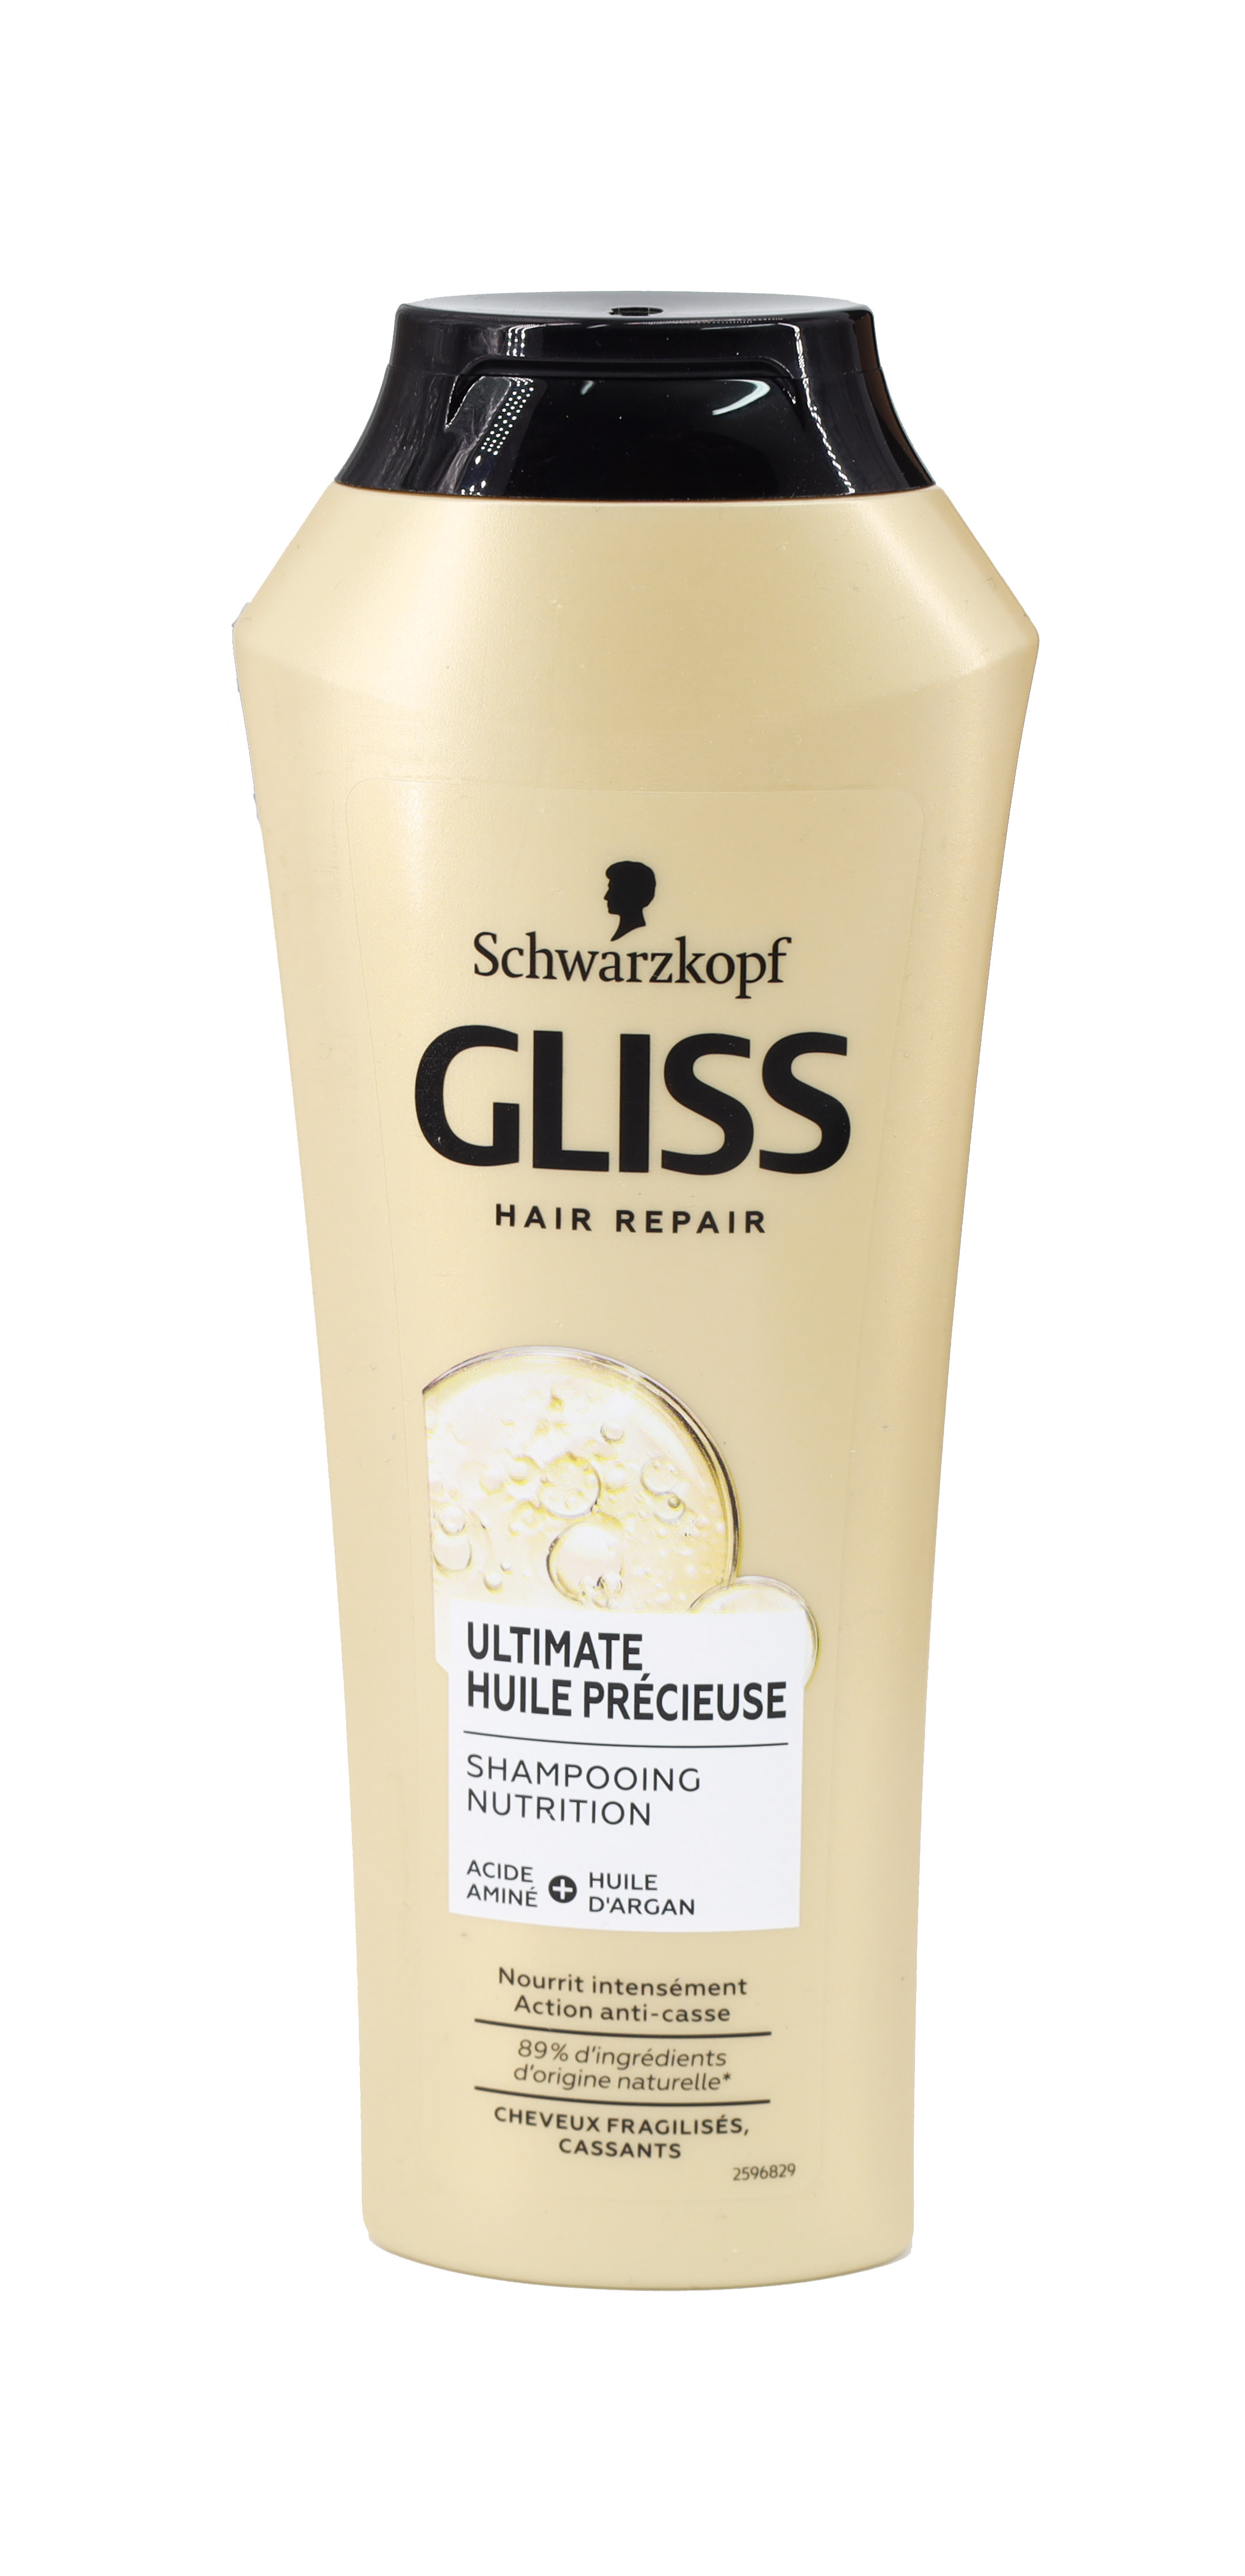 Gliss Hair Repair Ultimate Precious Oil Shampoo 250ml